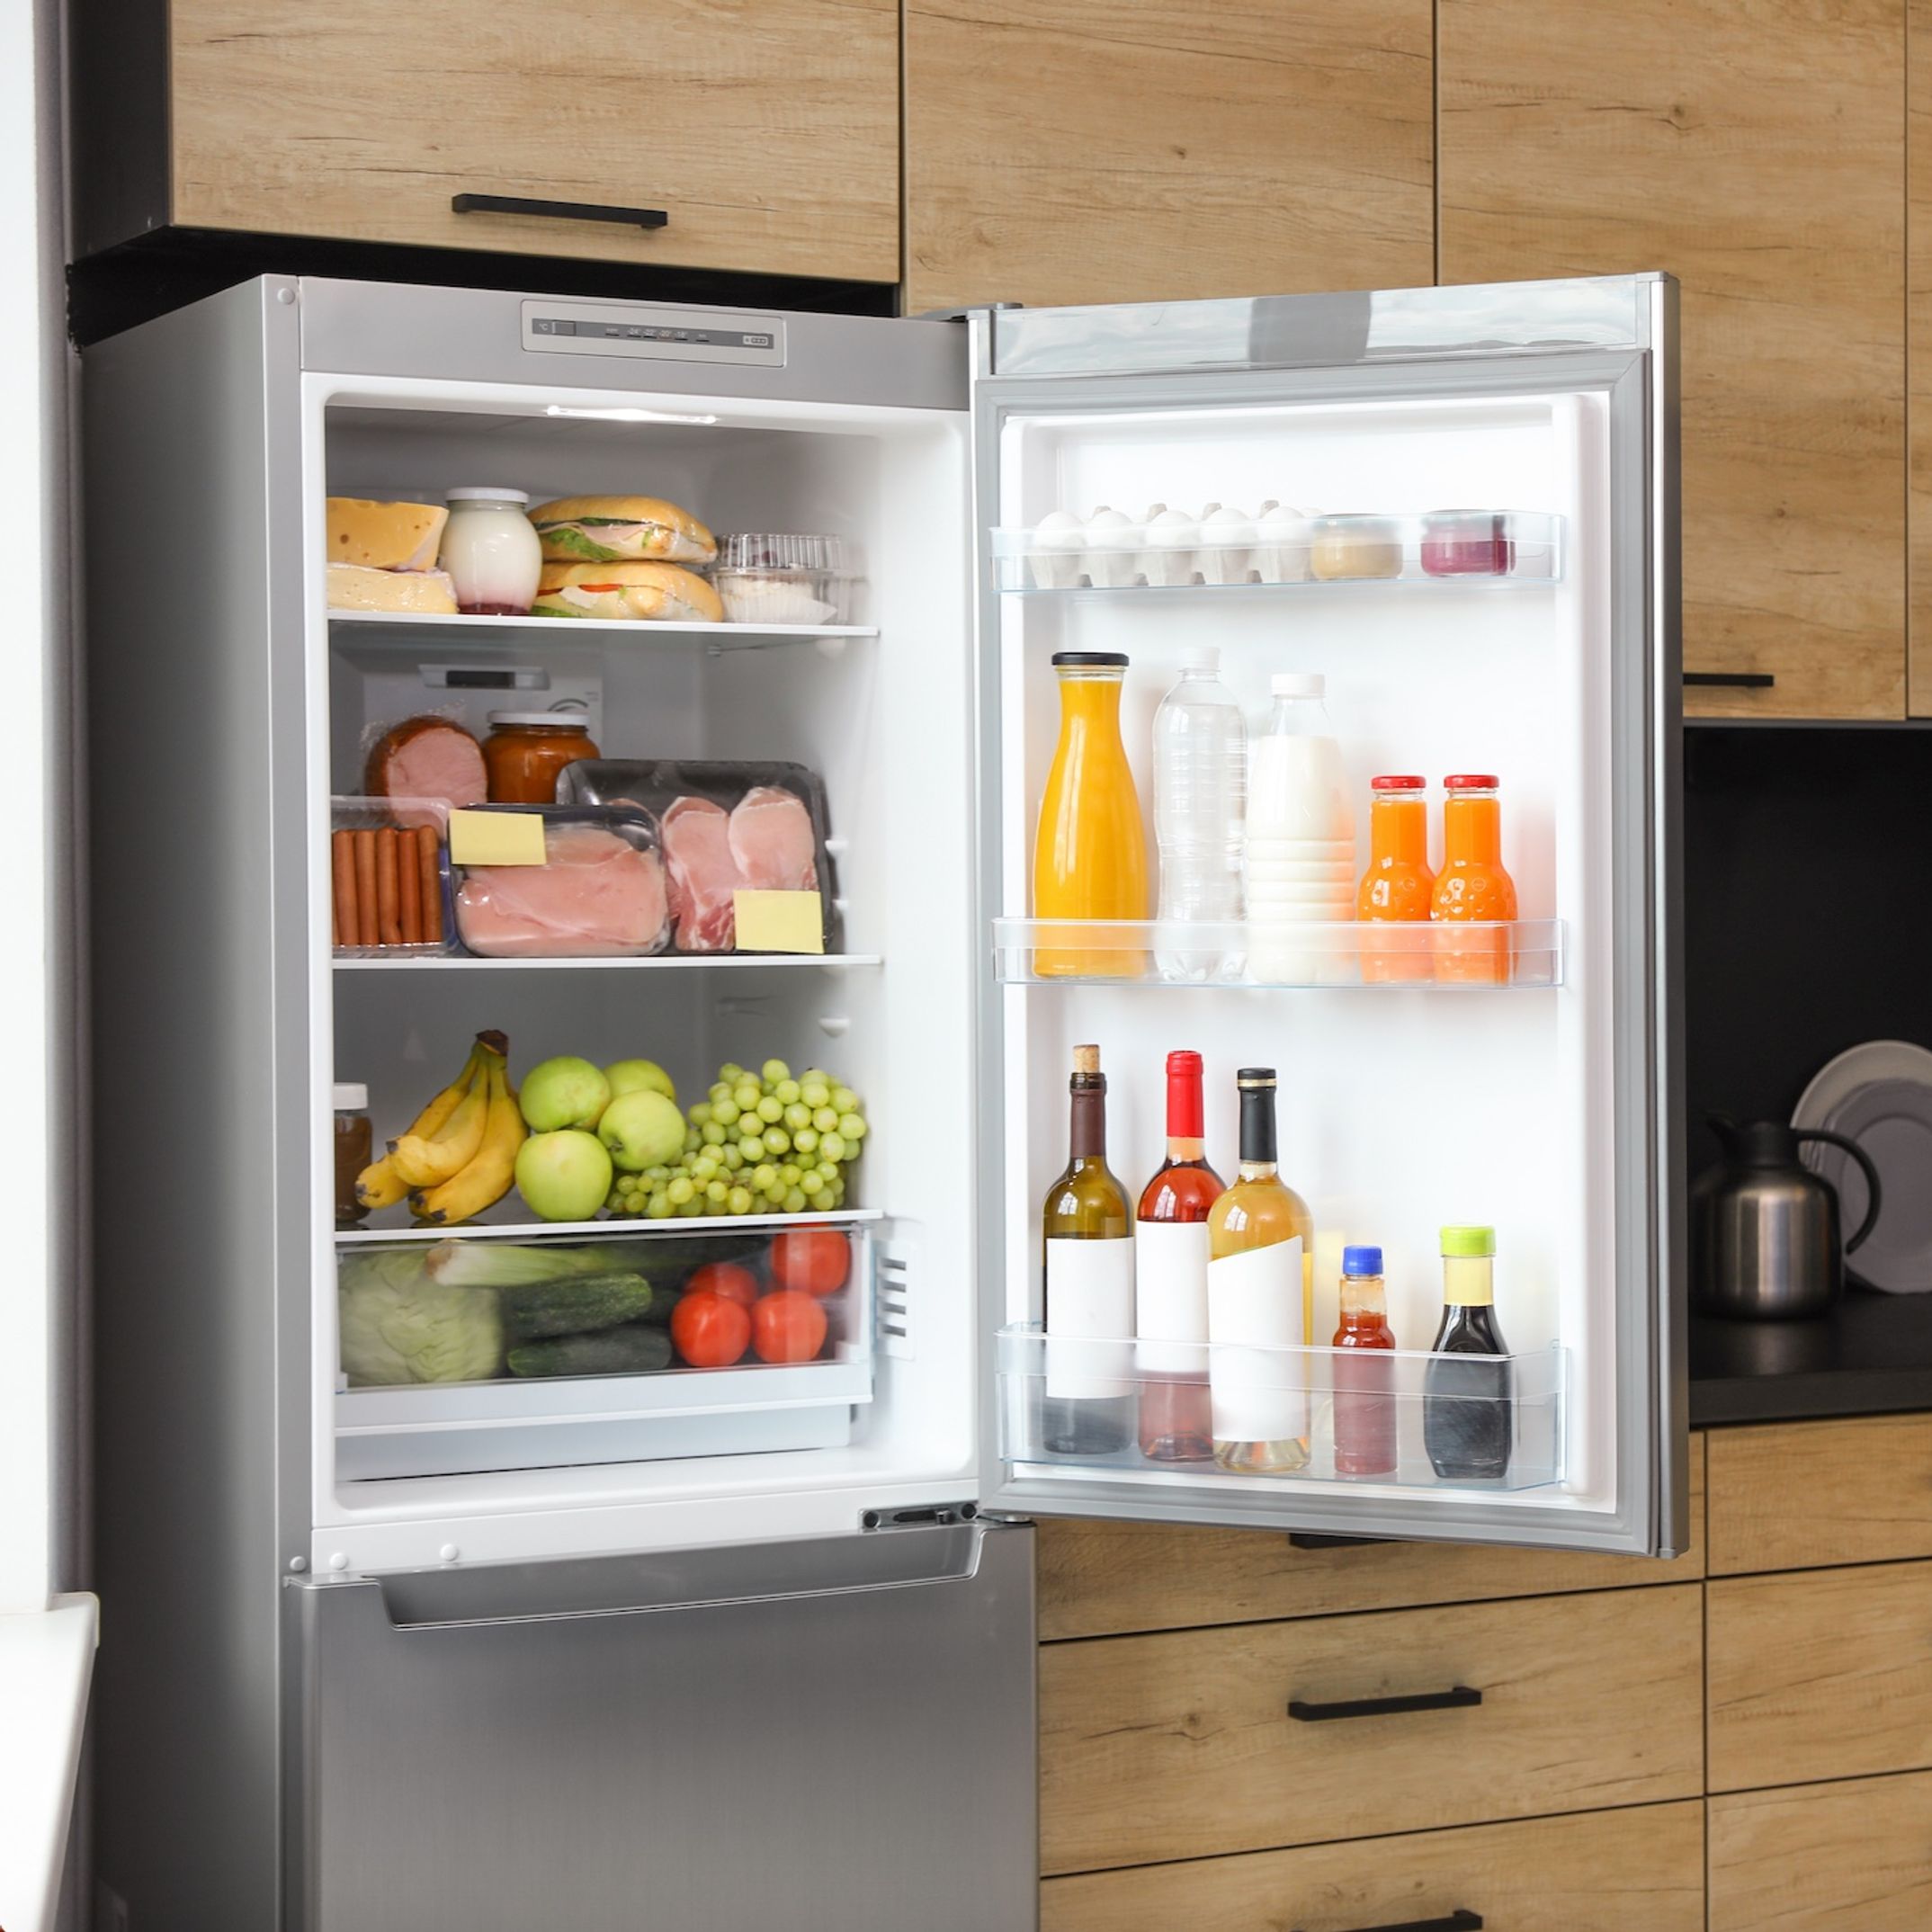 Réfrigérateur : quelques gestes simples pour préserver le frigo de